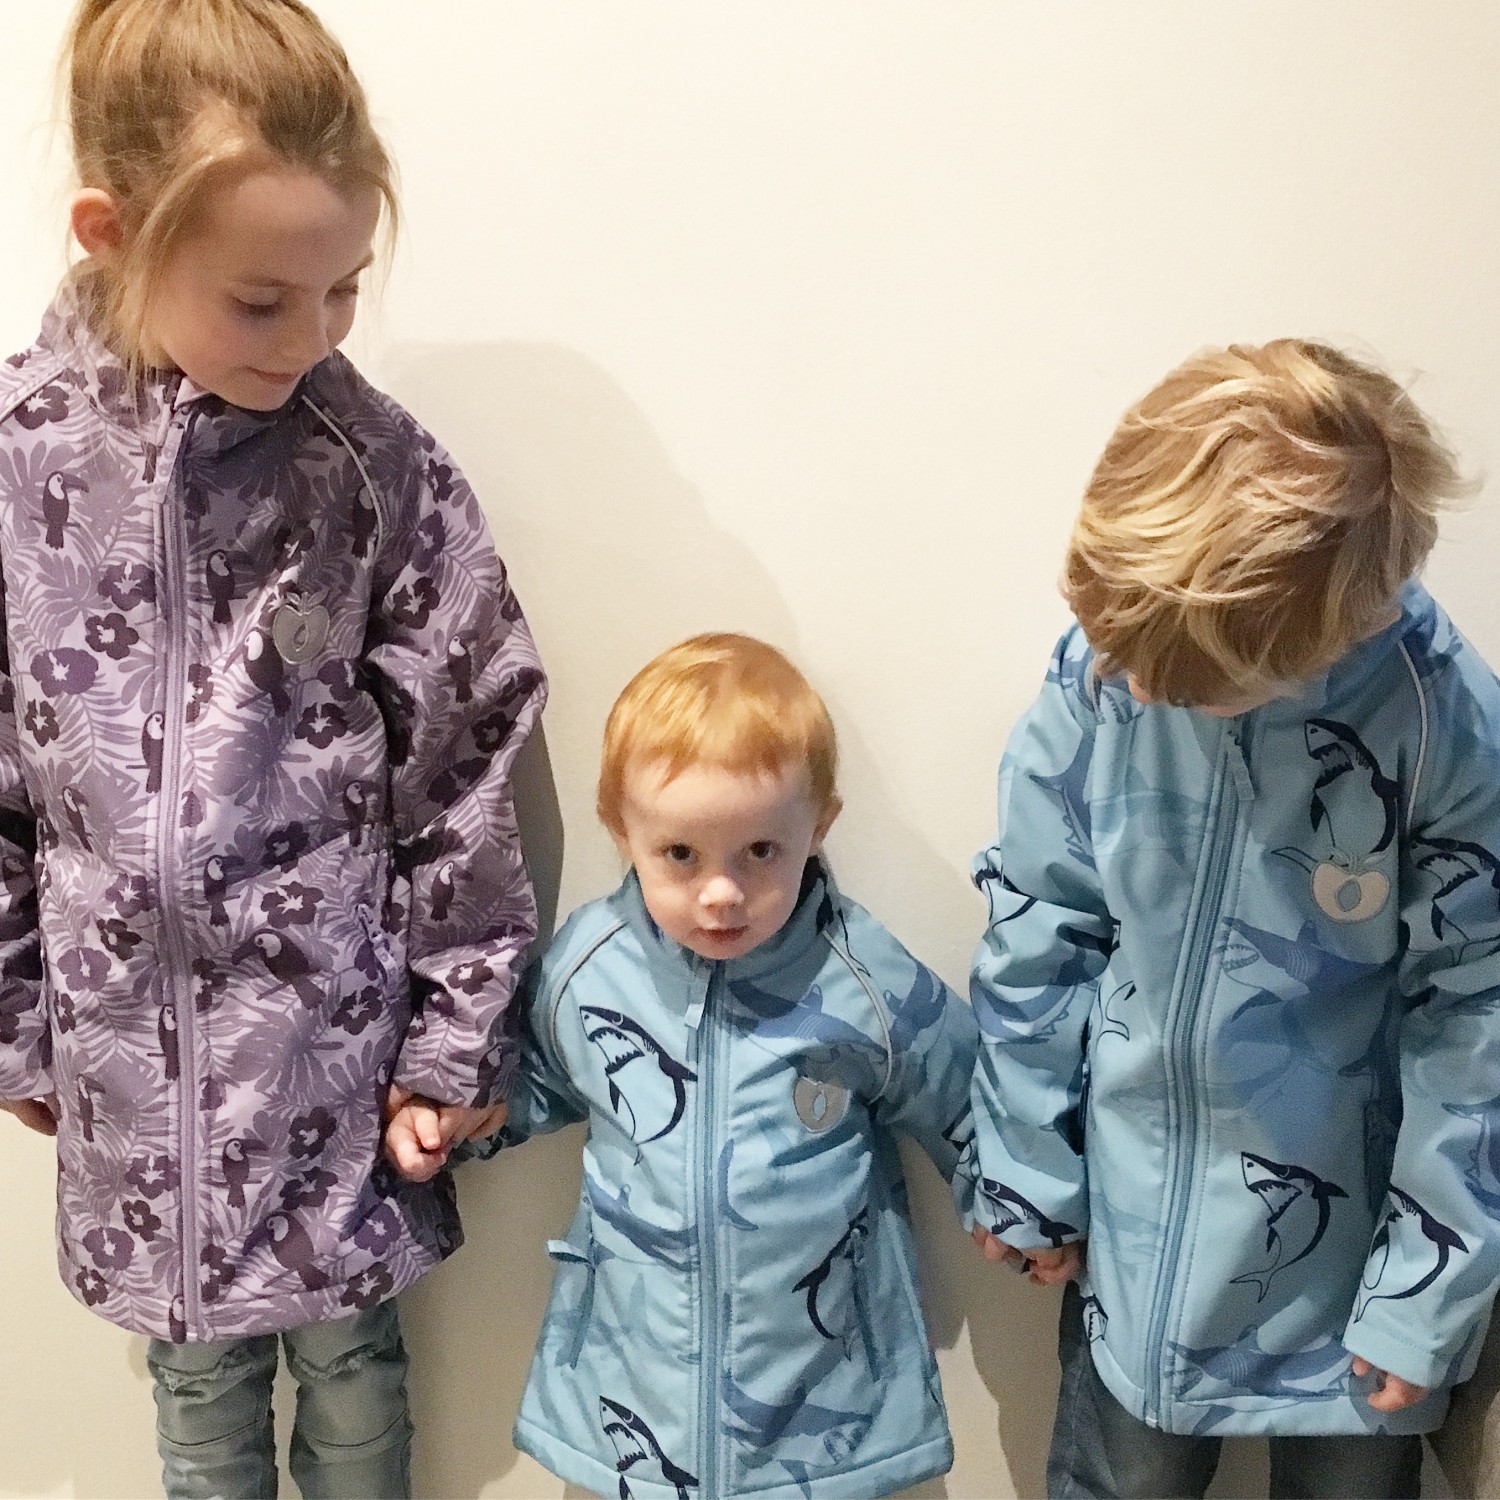 Tarif Opfattelse Muskuløs Test af Småfolk softshell jakker | Baby | Testfamilien